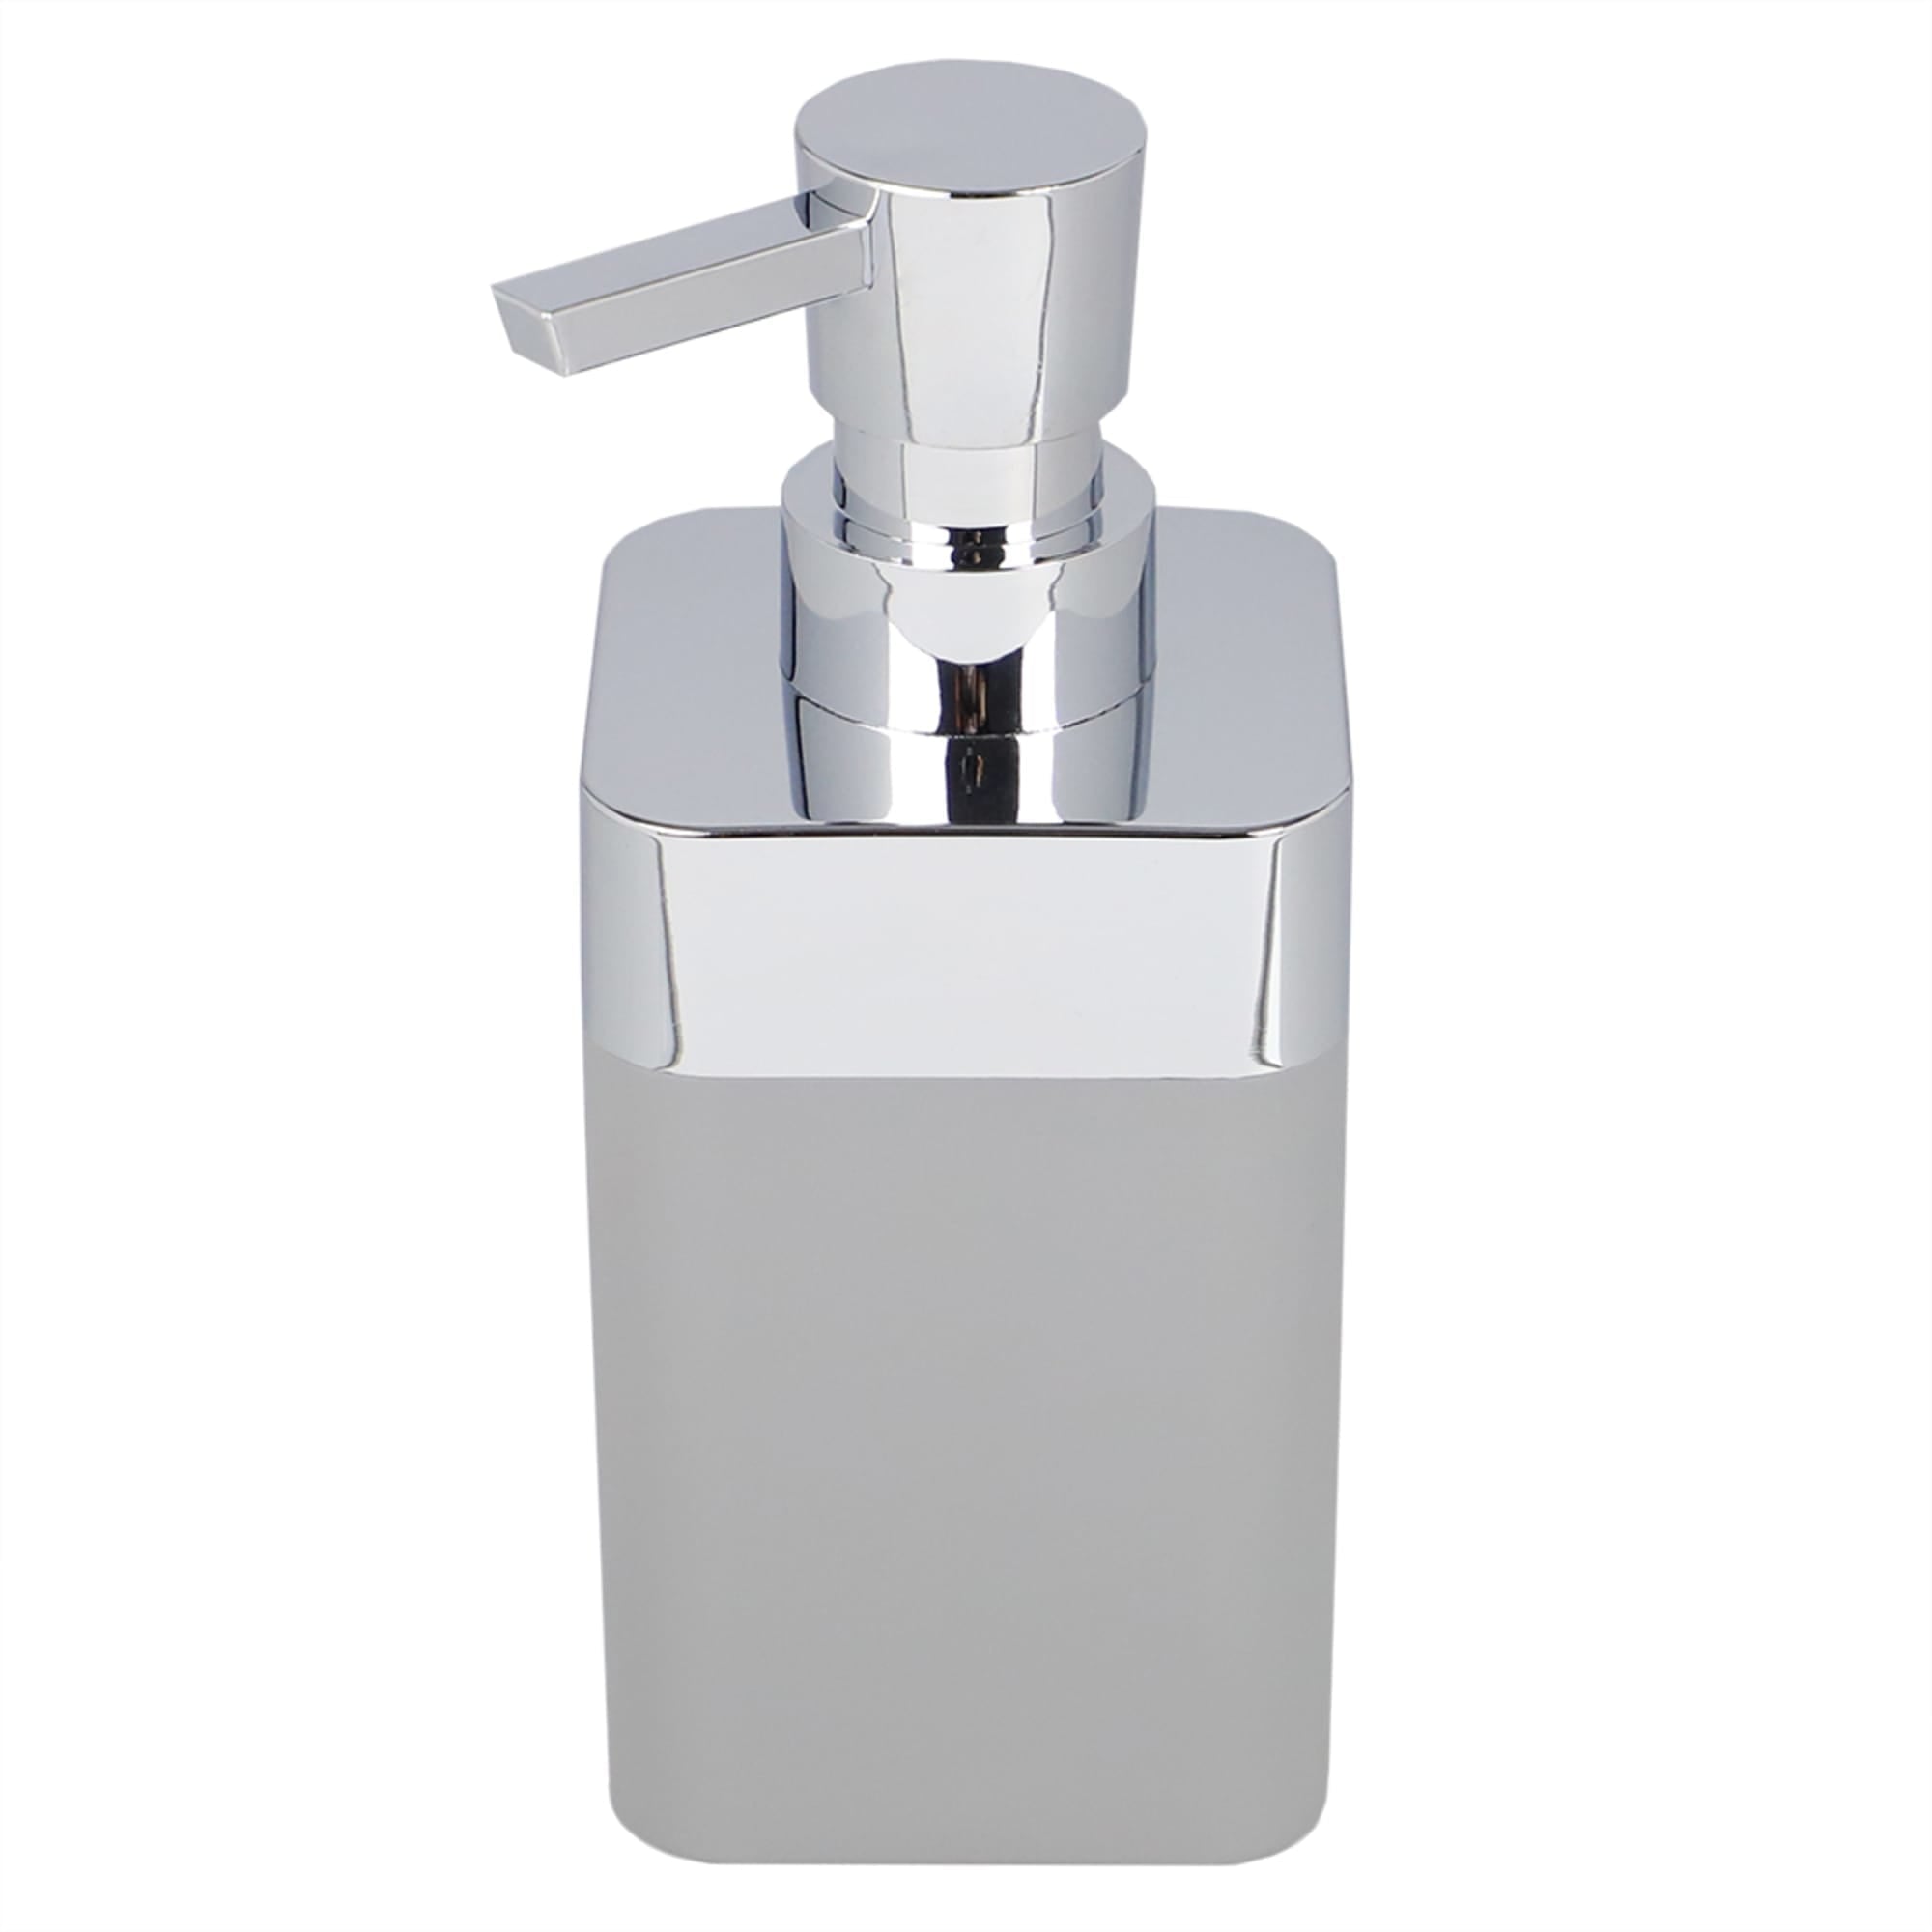 Home Basics Skylar 10 oz. ABS Plastic Soap Dispenser, Grey $4.00 EACH, CASE PACK OF 12